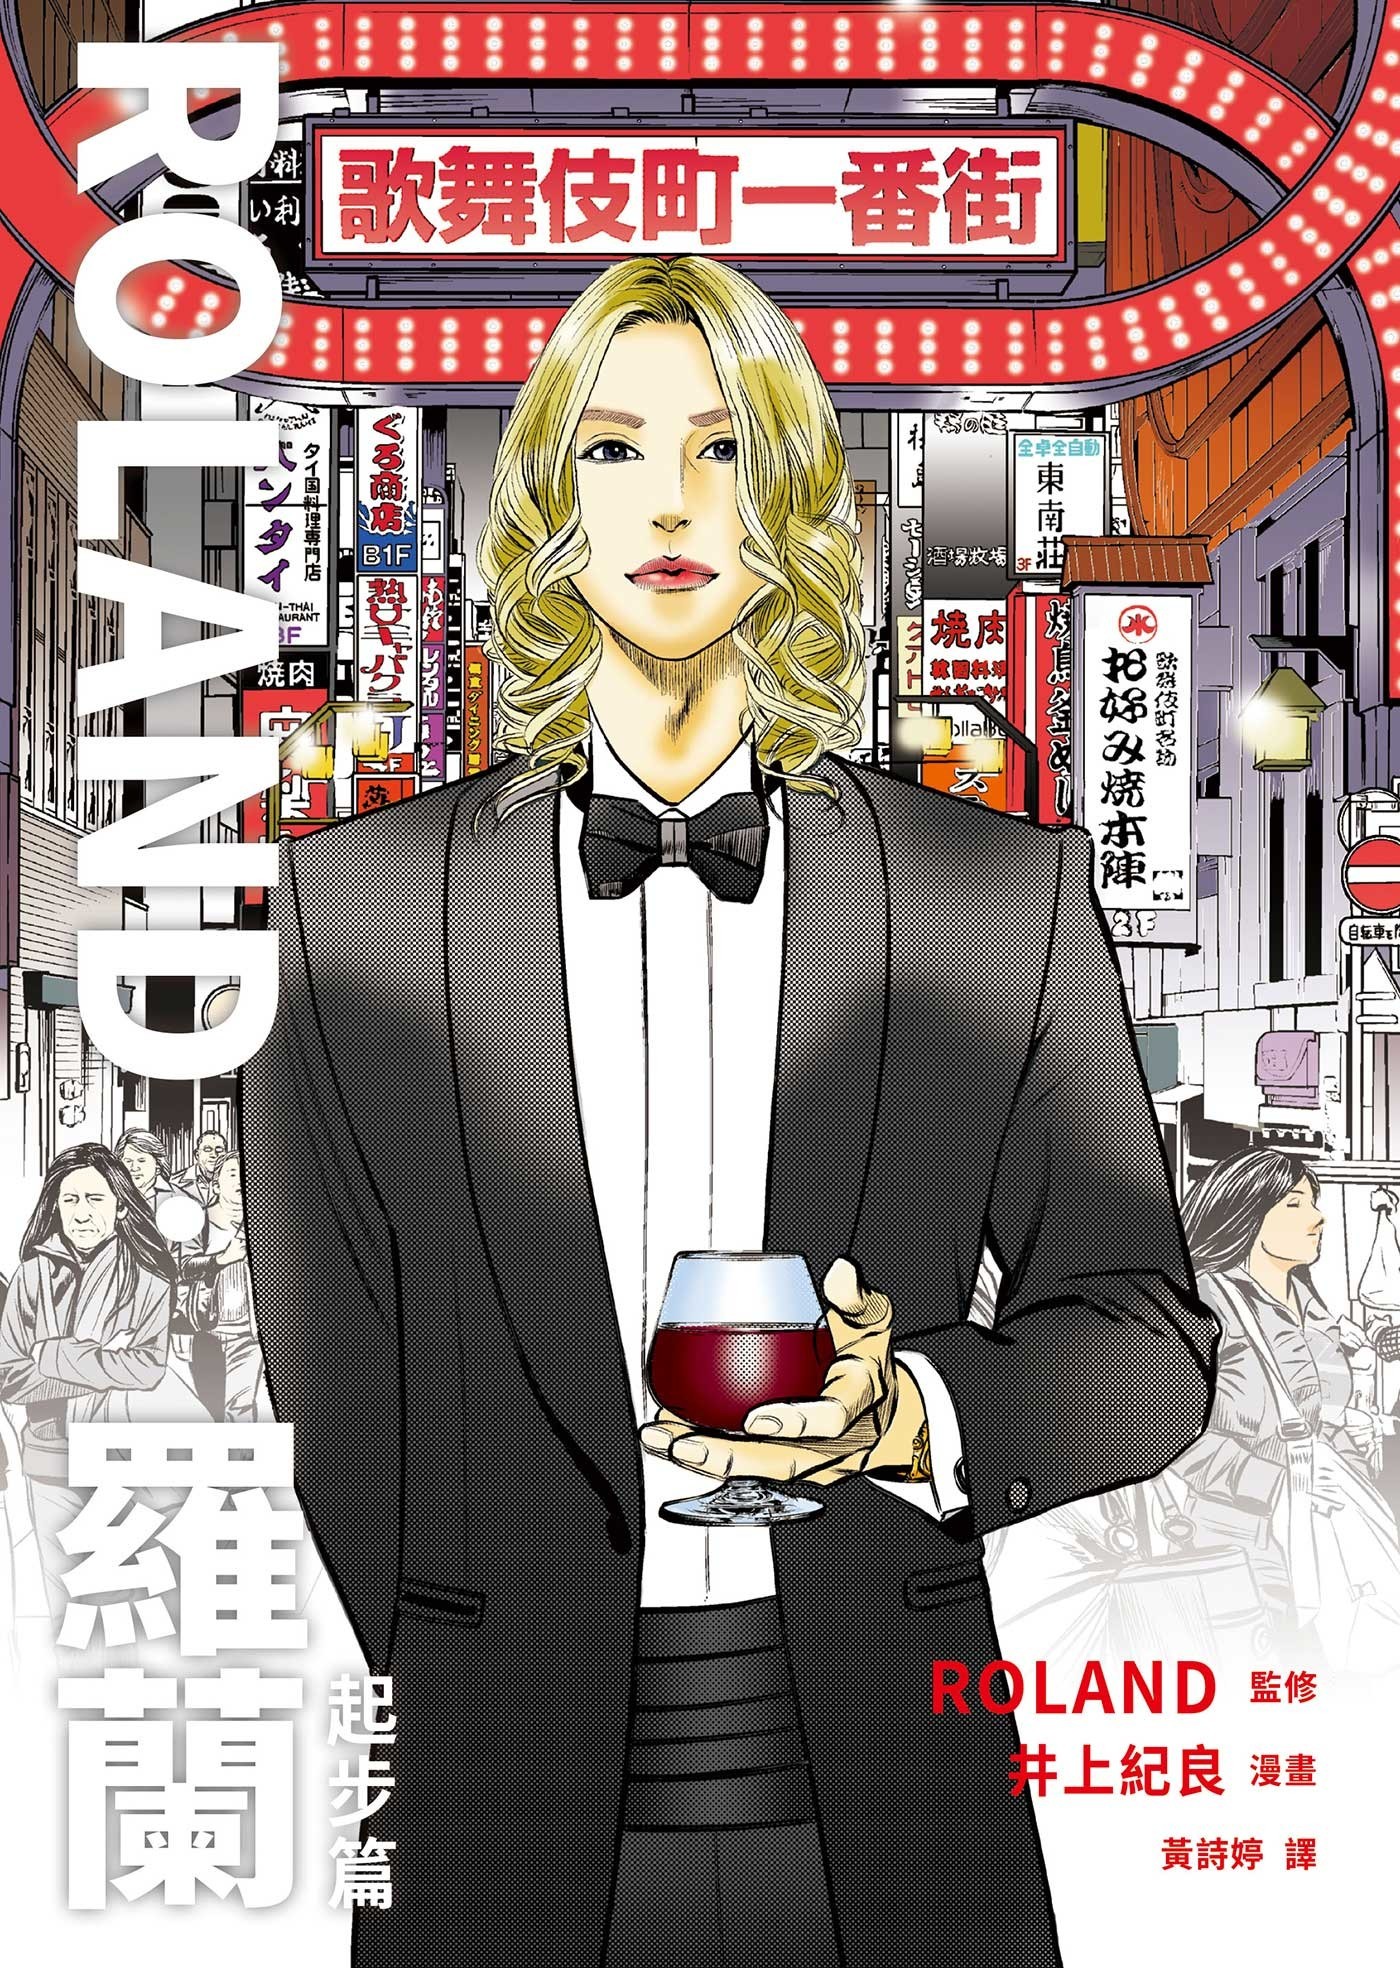 日本男公关传奇的起点《ROLAND‧罗兰》漫画将于 2/1 在台上市